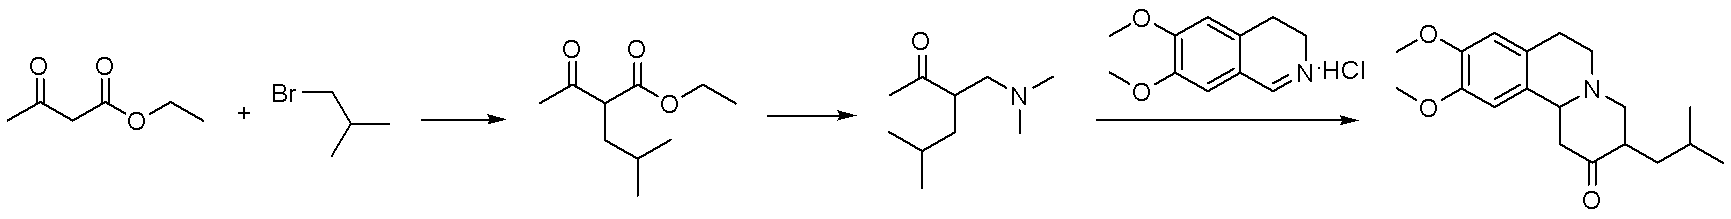 Method for synthesizing tetrabenazine